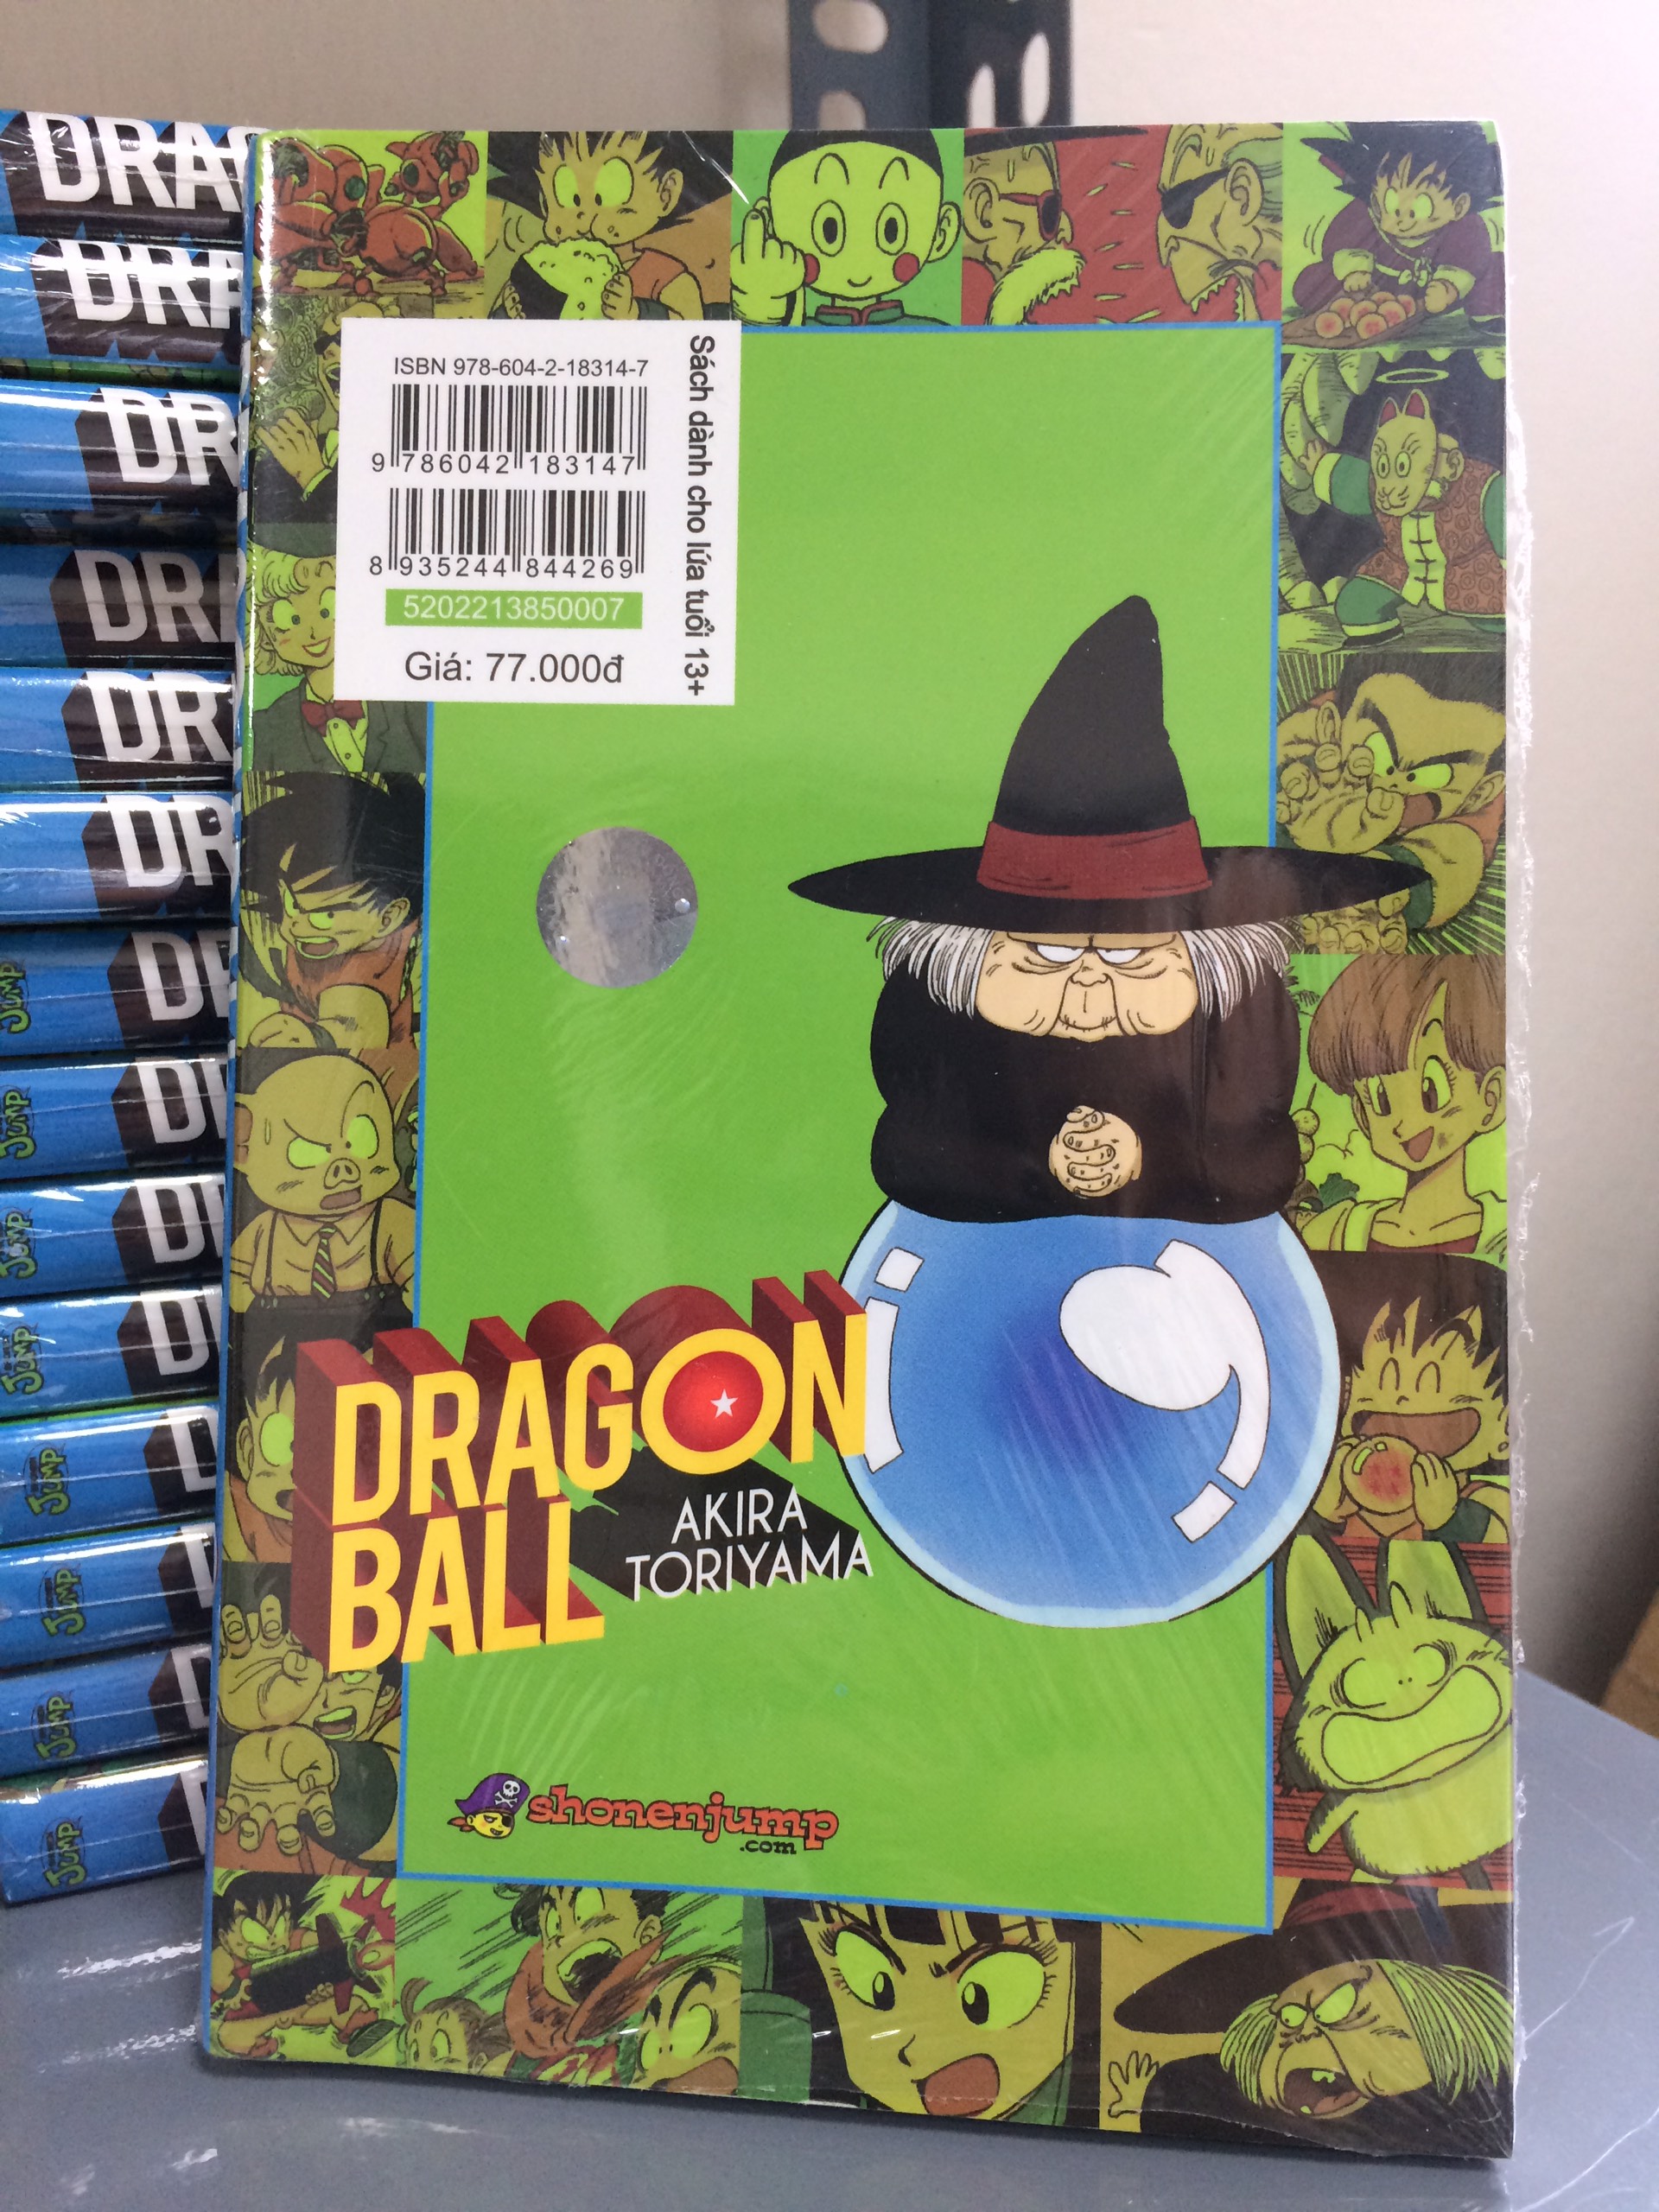 Dragon Ball Full Color - Phần một: Thời niên thiếu của Son Goku - Tập 7